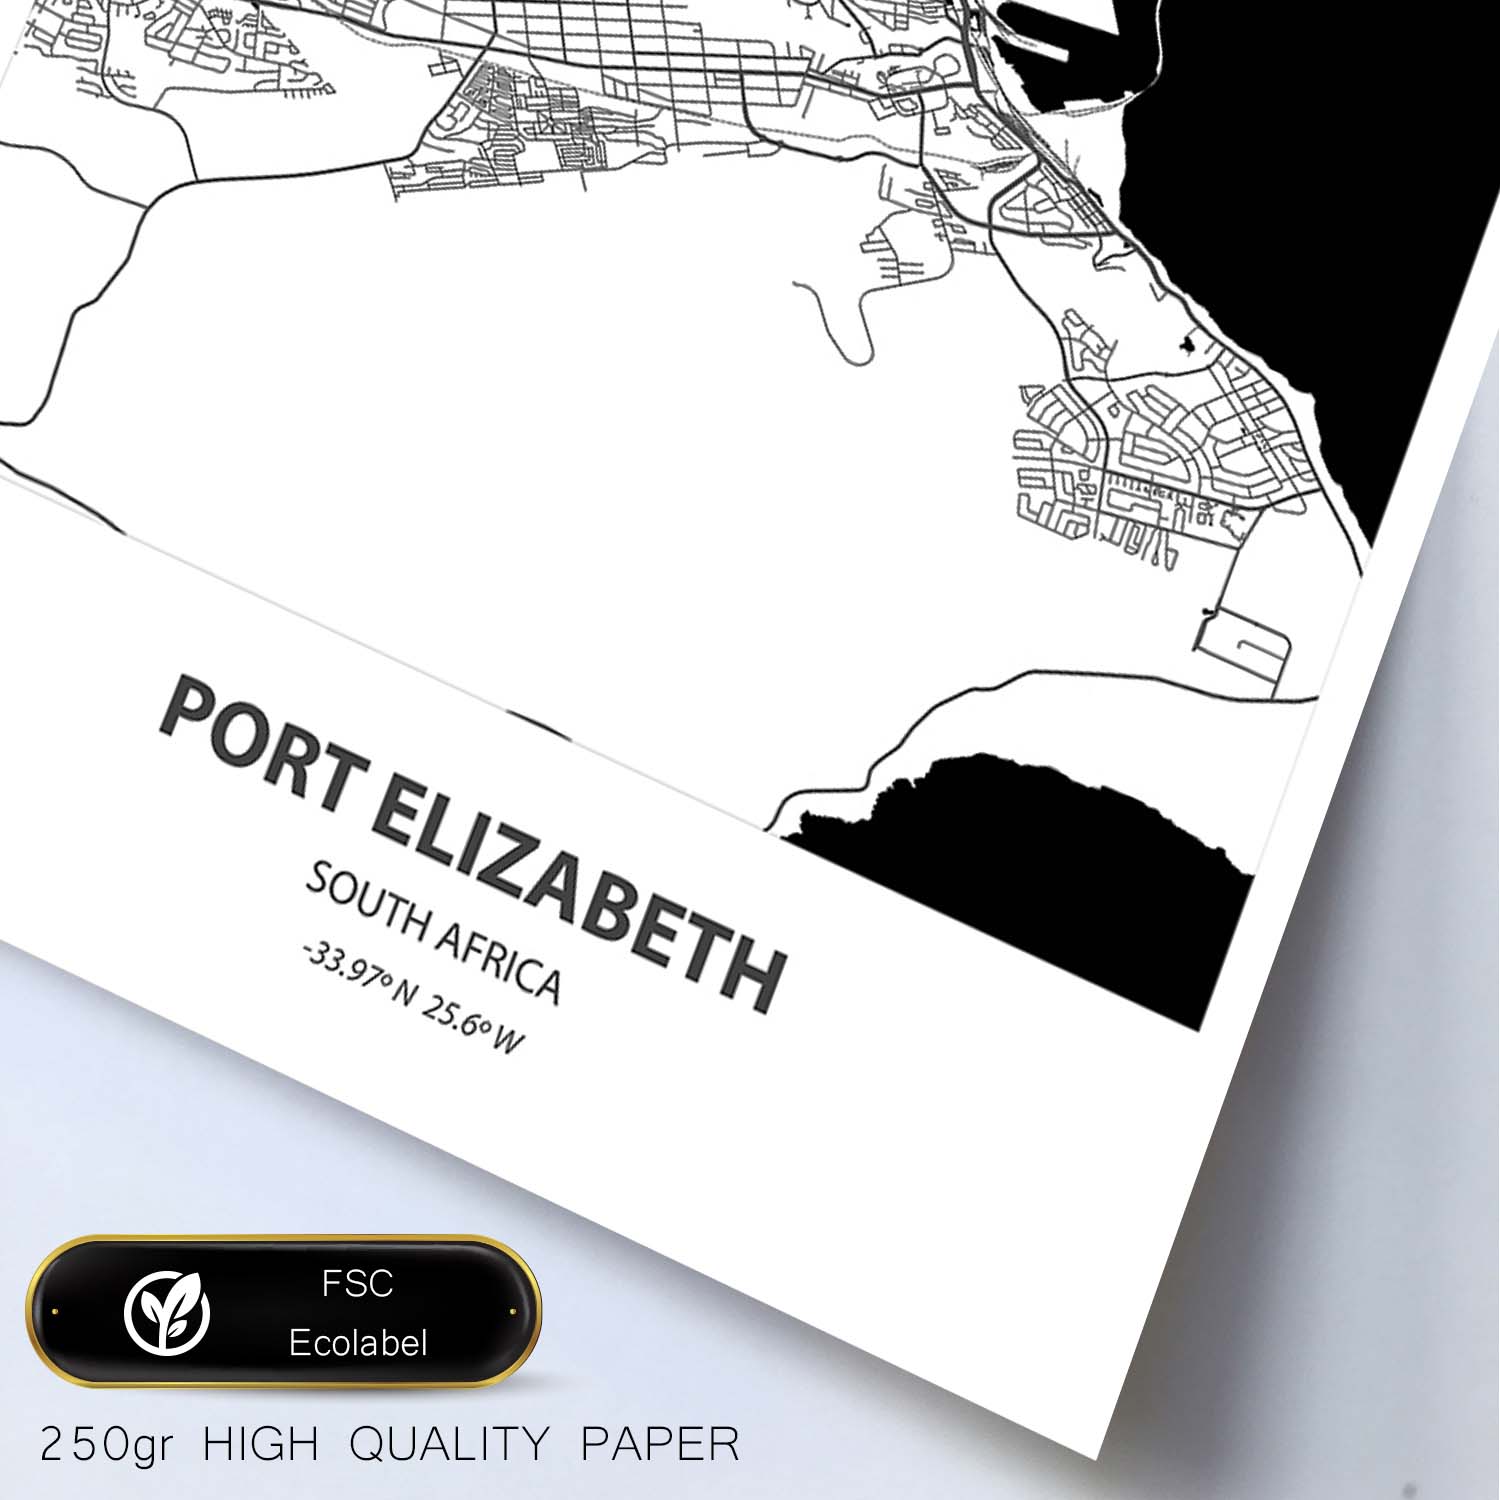 Poster con mapa de Port Elizabeth - Sudáfrica. Láminas de ciudades de África con mares y ríos en color negro.-Artwork-Nacnic-Nacnic Estudio SL